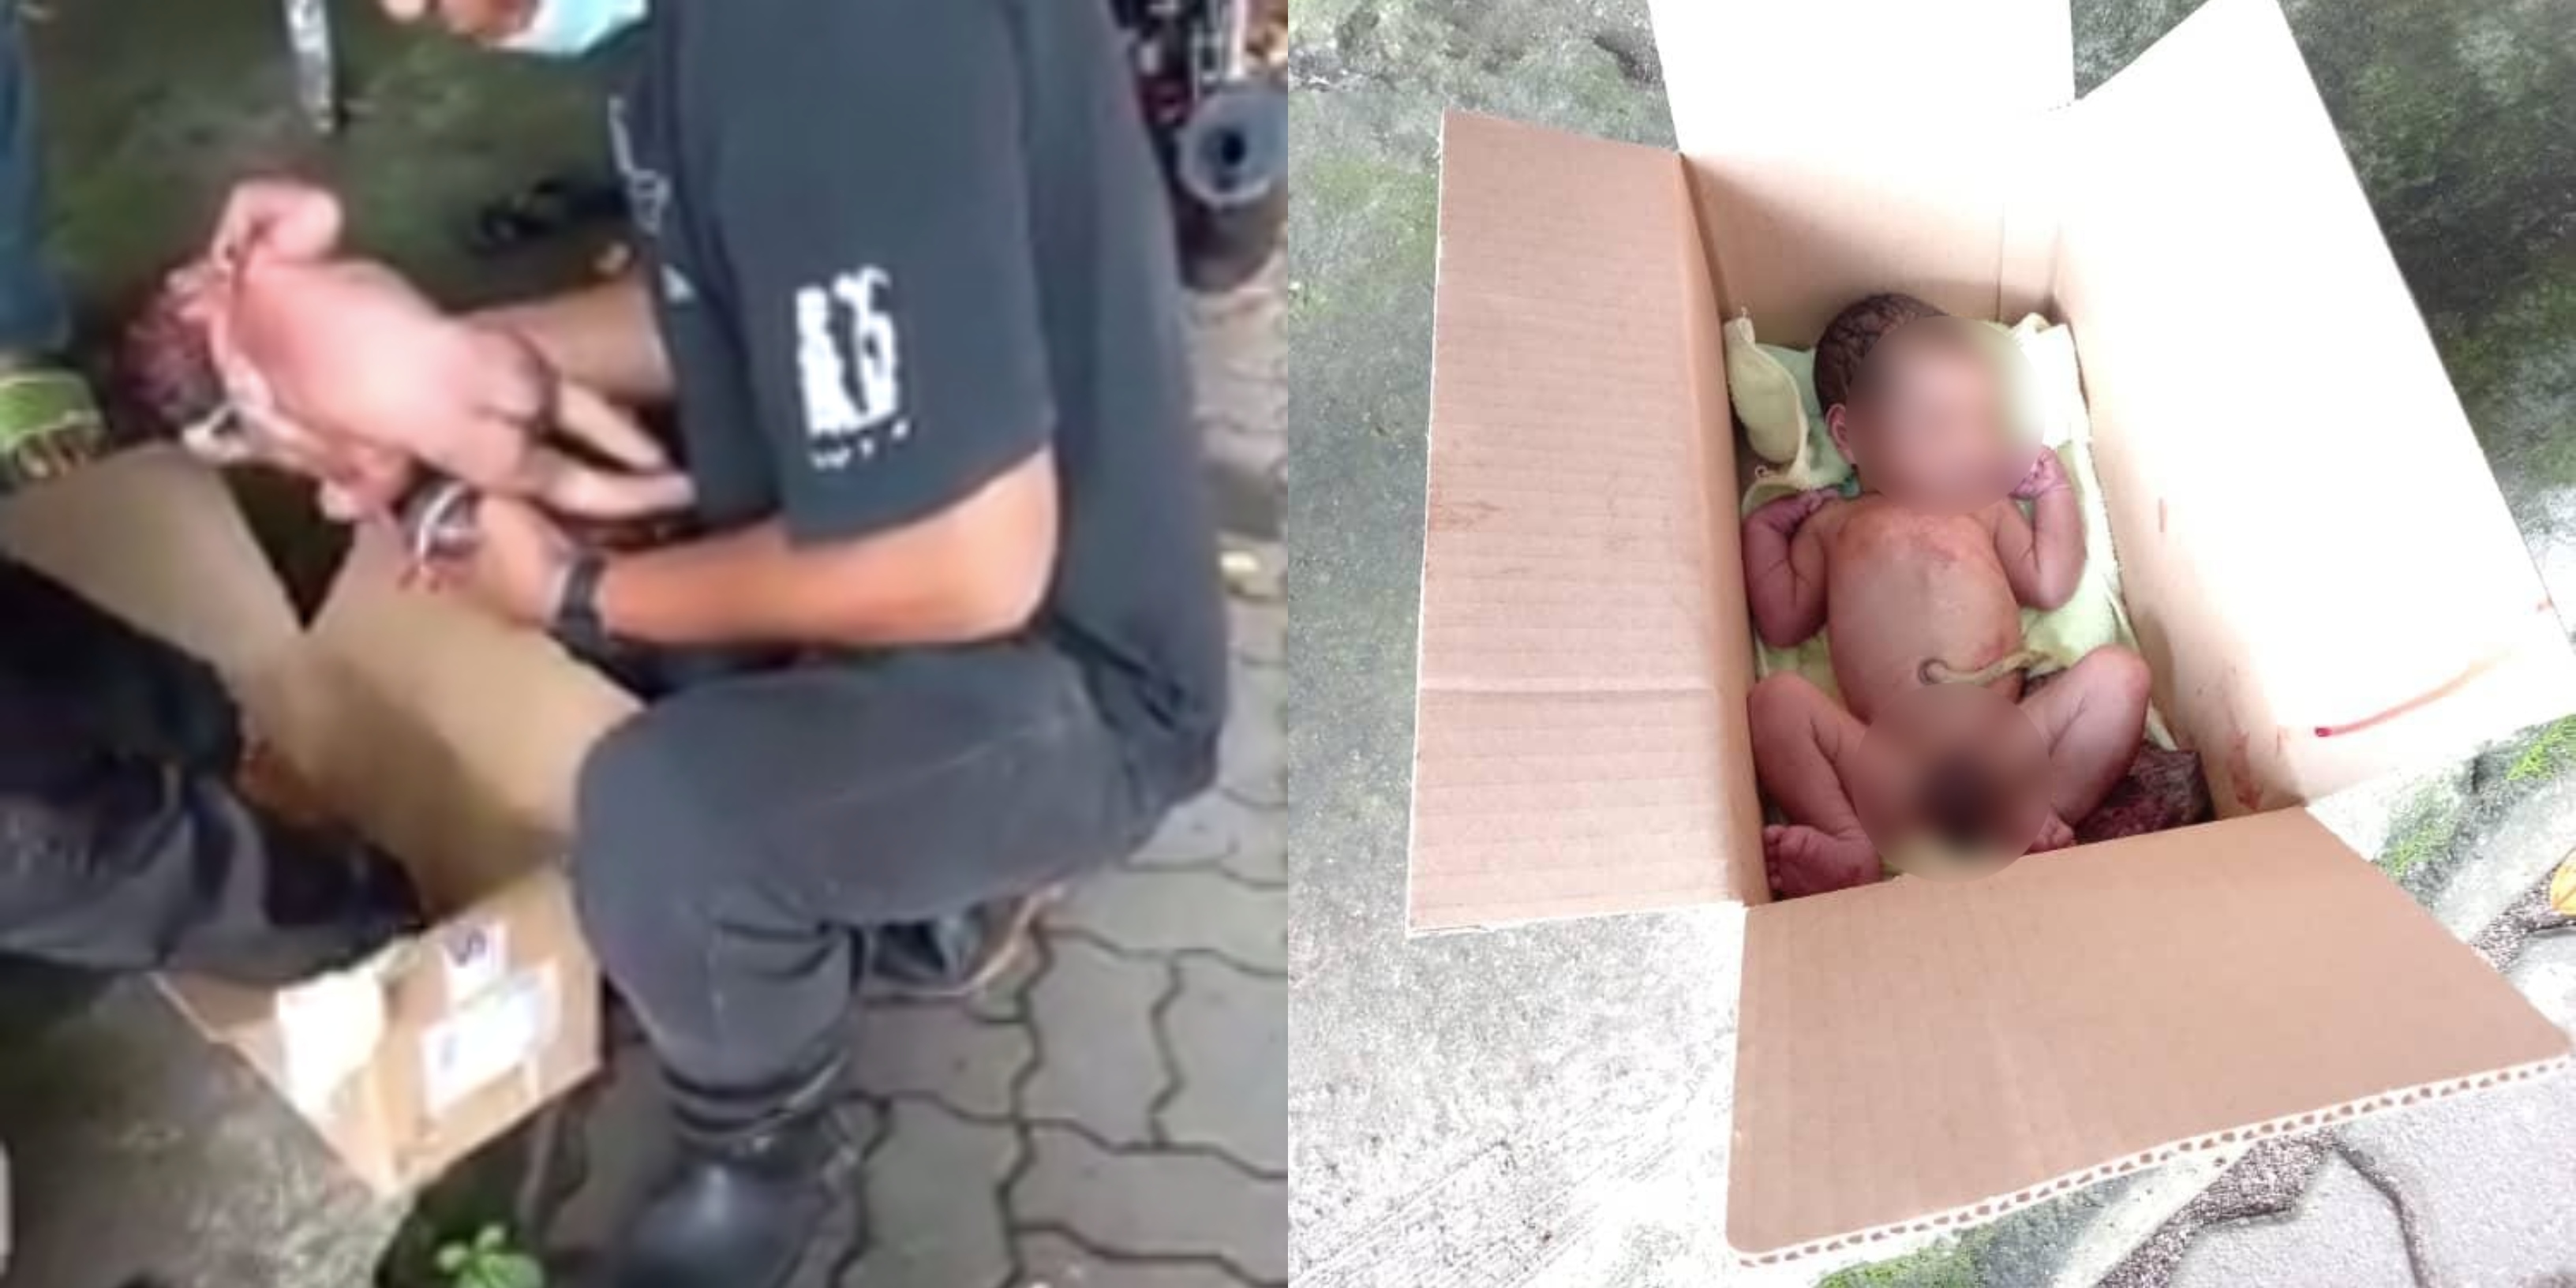 [VIDEO] Sangkakan Anak Kucing, Bayi Masih Bertali Pusat Ditemui Dalam Kotak